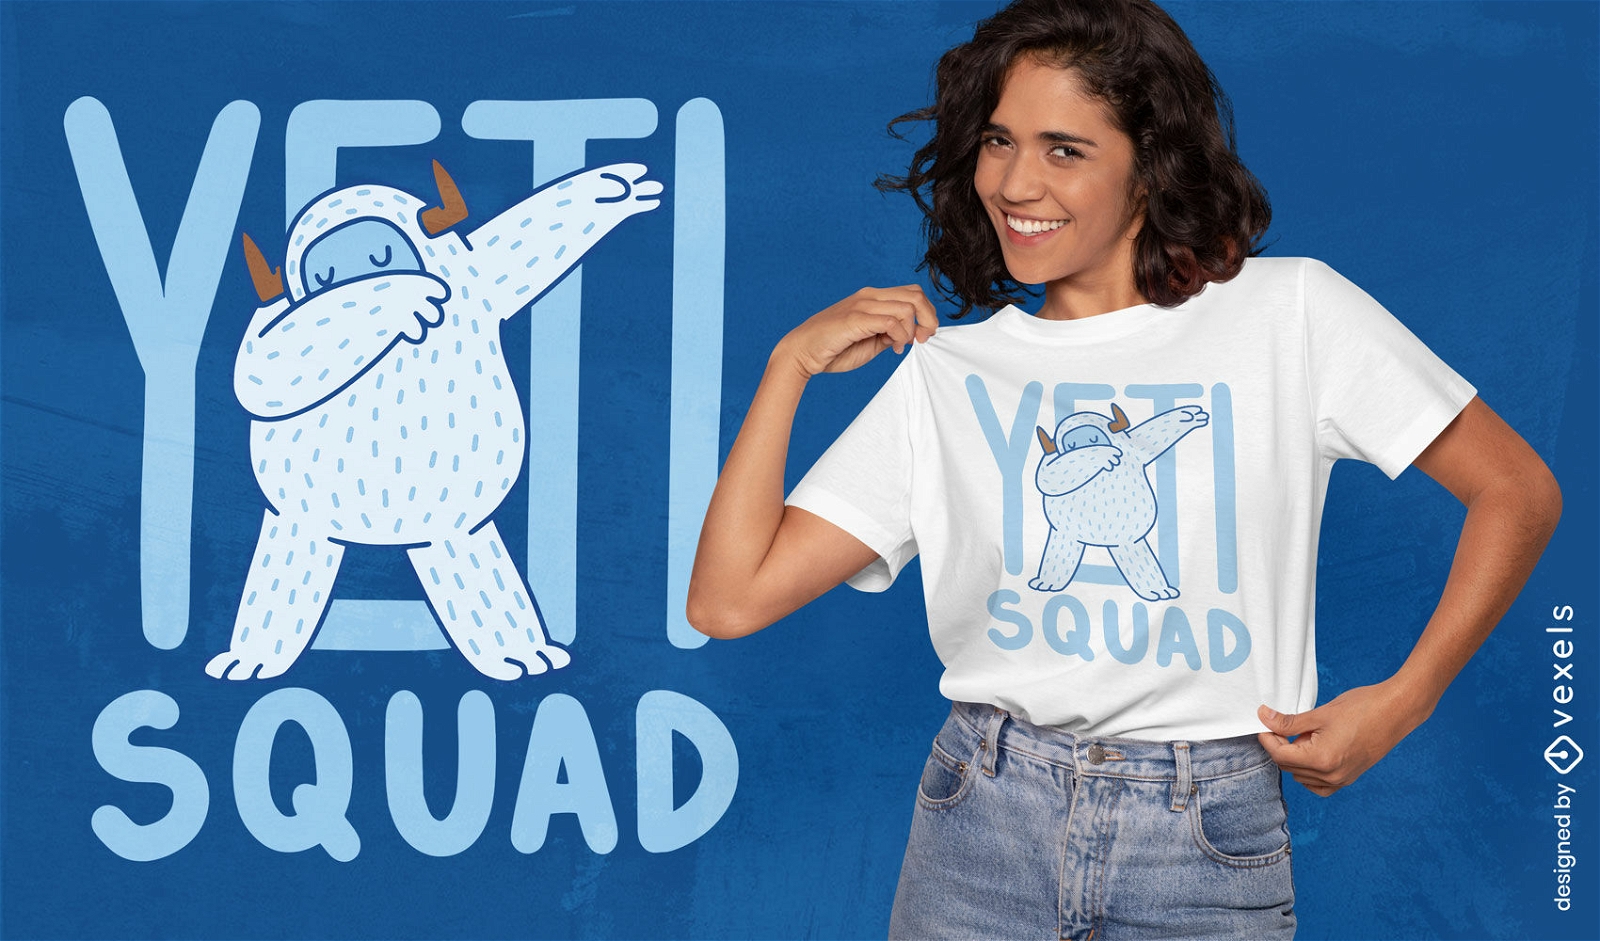 Yeti squad funny cartoon t-shirt design